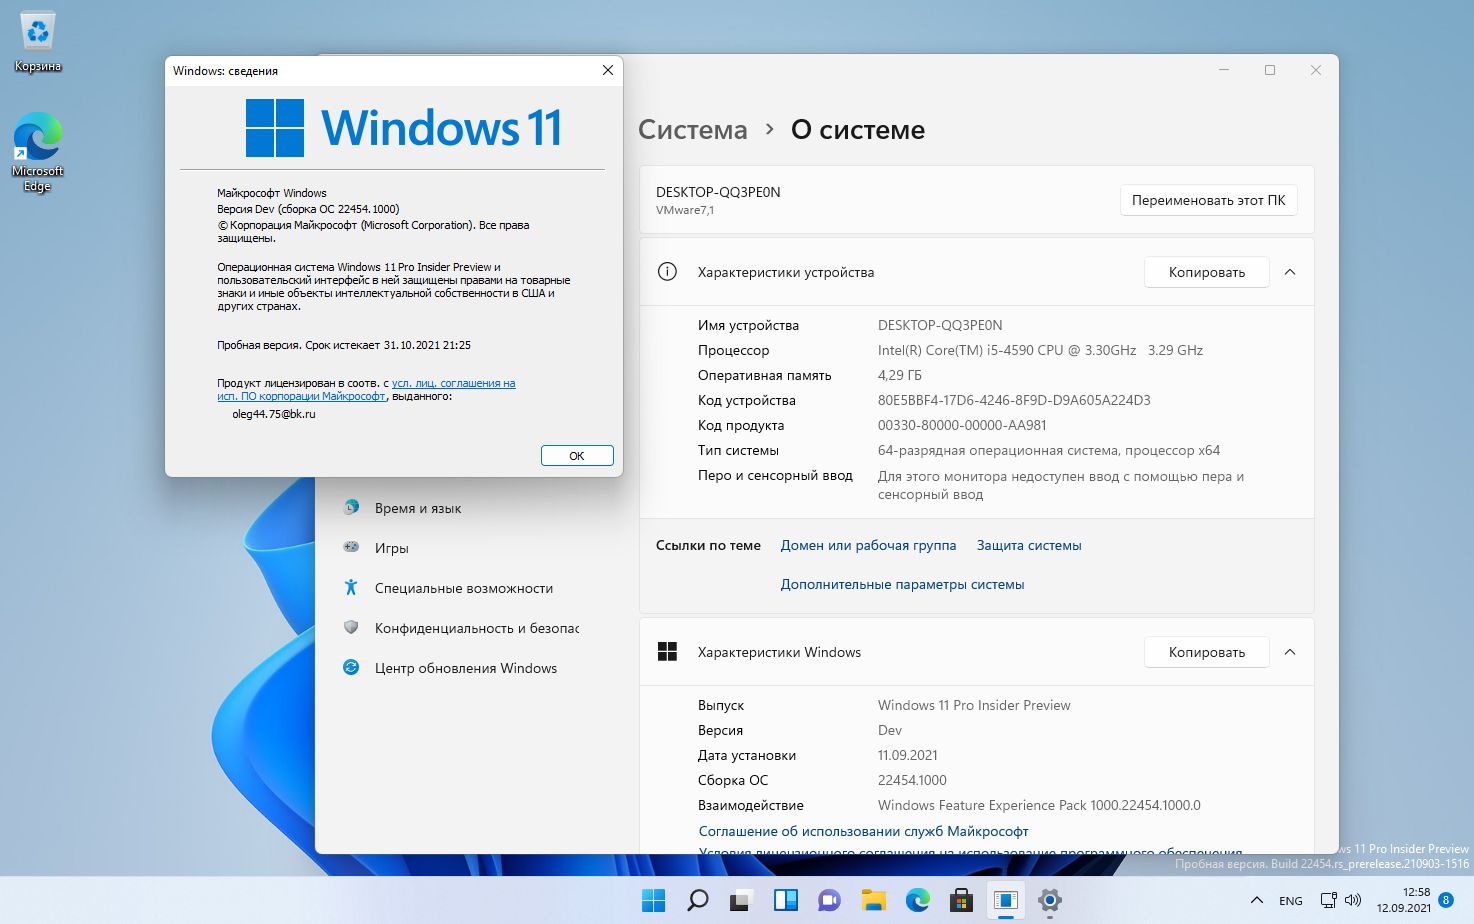 Windows 11 Insider Preview, Version 21H2 [10.0.22454.1000] Оригинальные образы от Microsoft